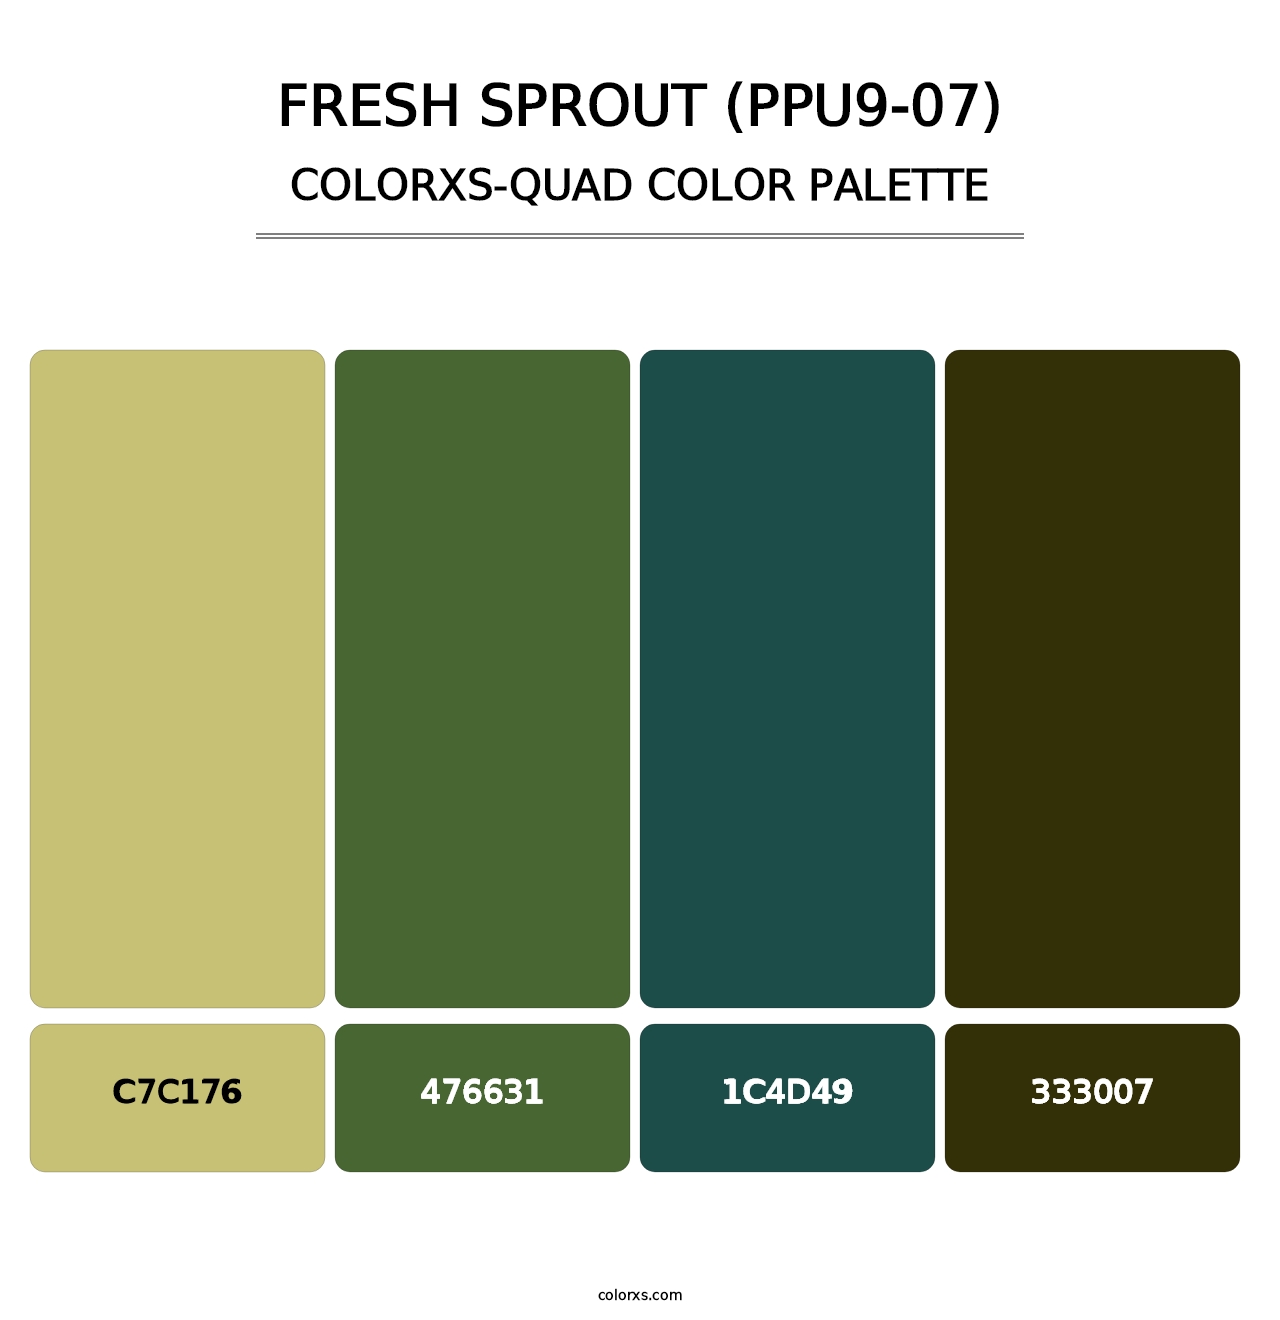 Fresh Sprout (PPU9-07) - Colorxs Quad Palette